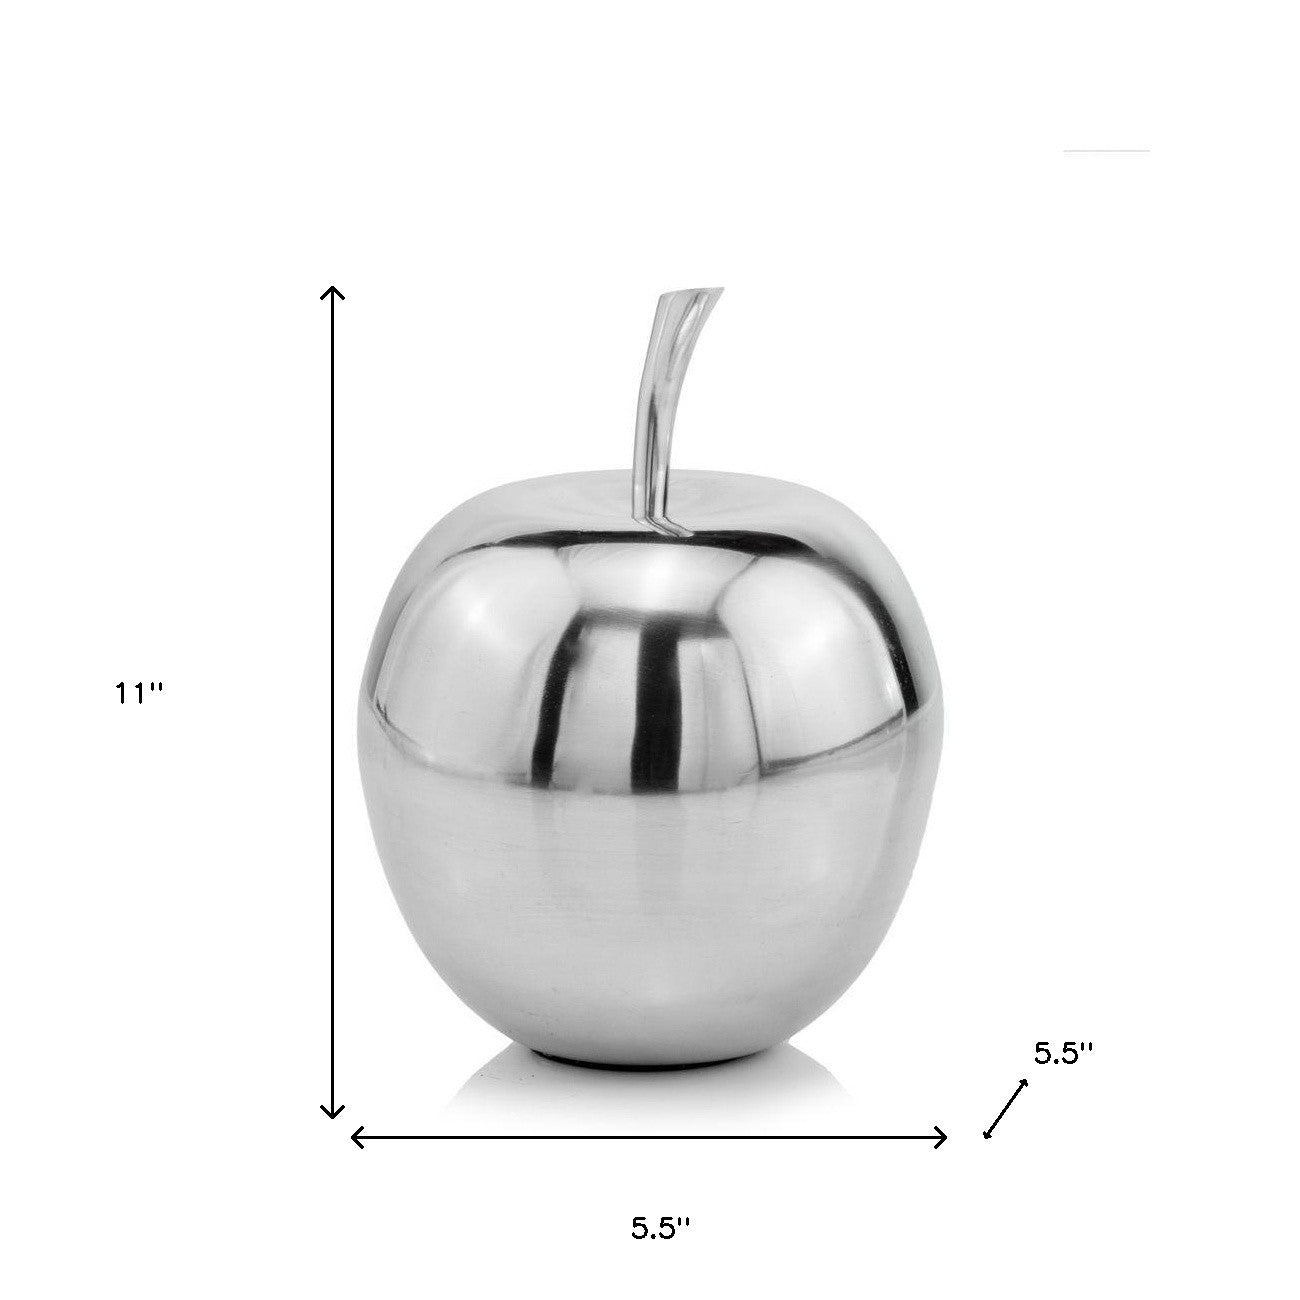 11" Silver Buffed Aluminum Decorative Apple Tabletop Sculpture